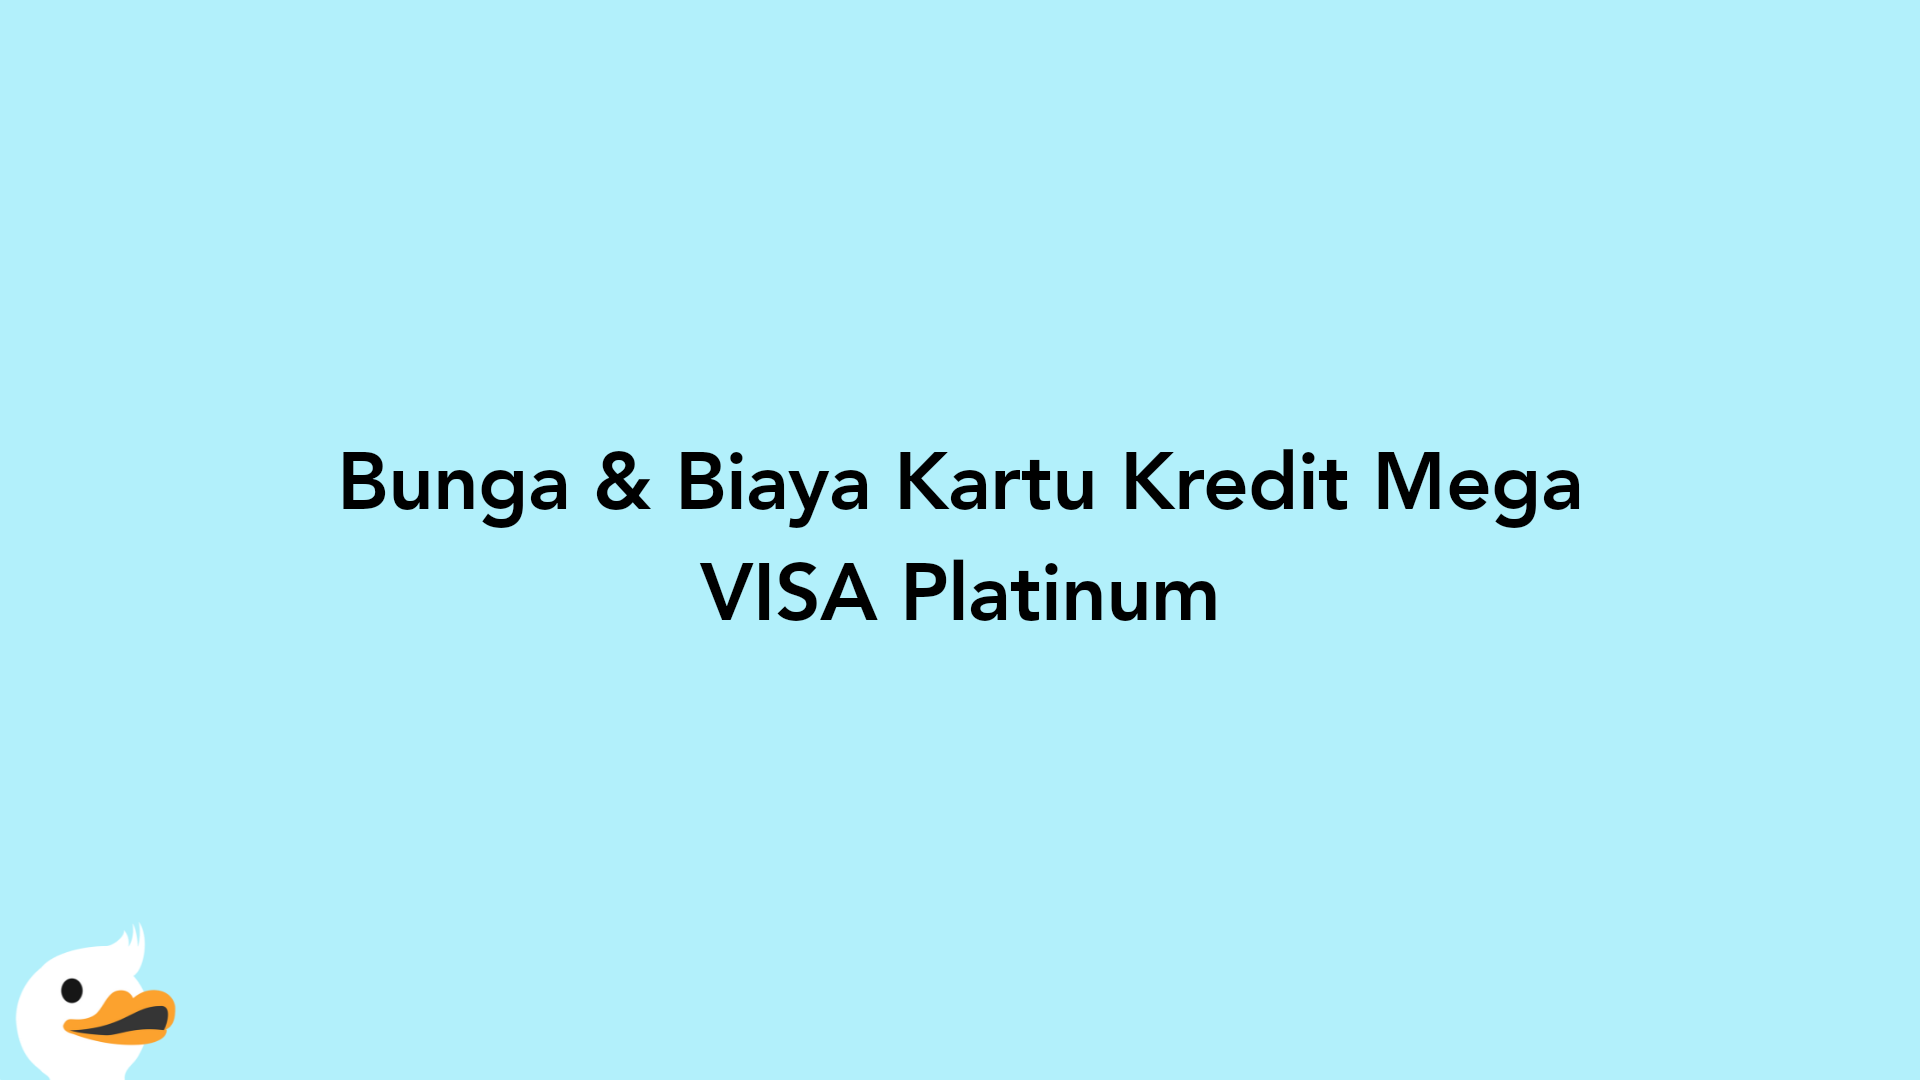 Bunga & Biaya Kartu Kredit Mega VISA Platinum